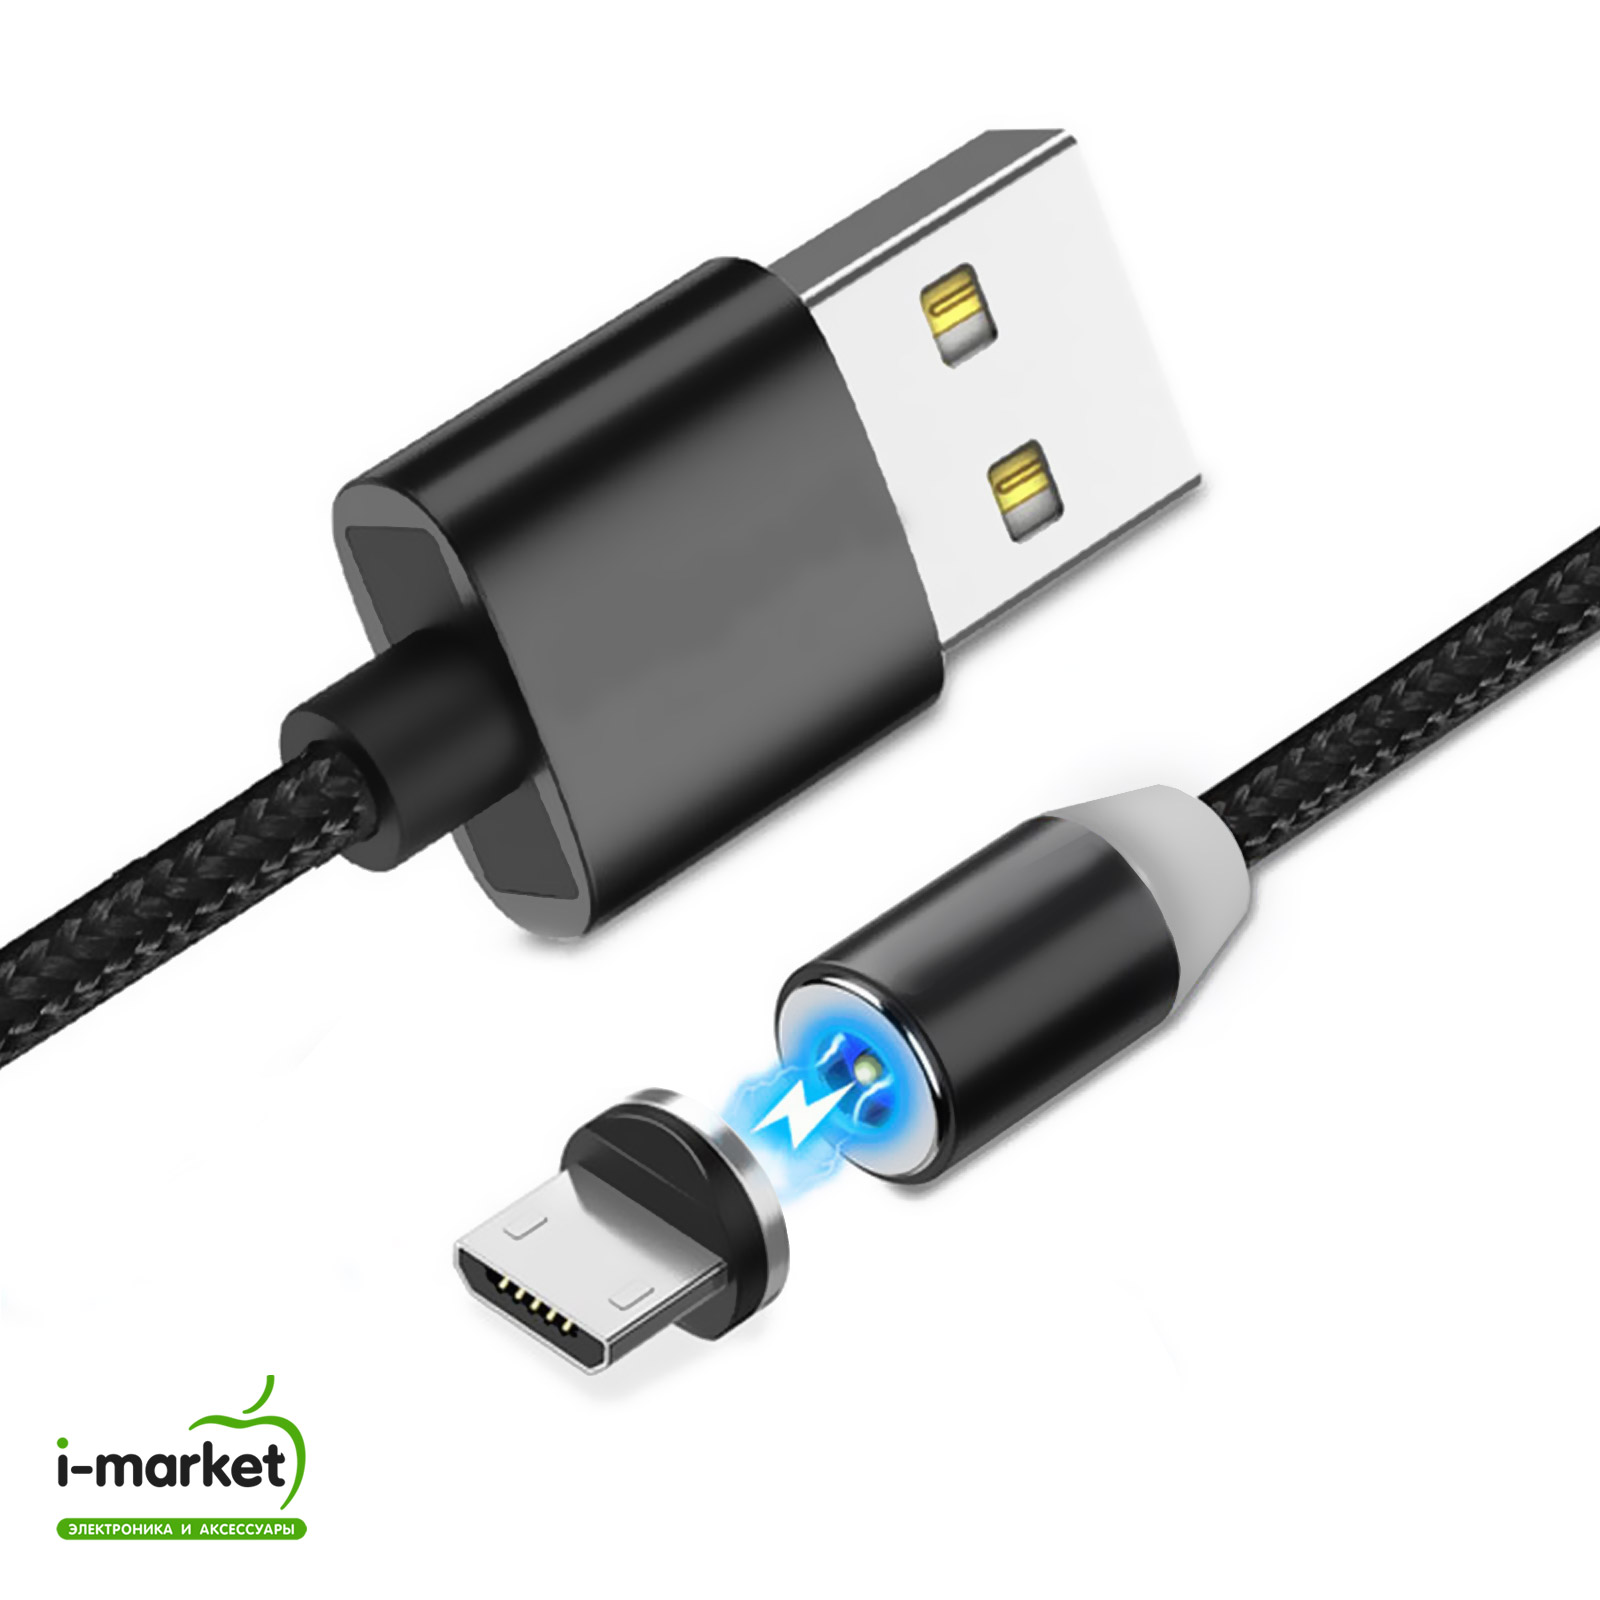 USB кабель магнитный 360 "Magnetic Cable" Micro USB, длина 1 метр, тканевая оплетка, цвет черный.